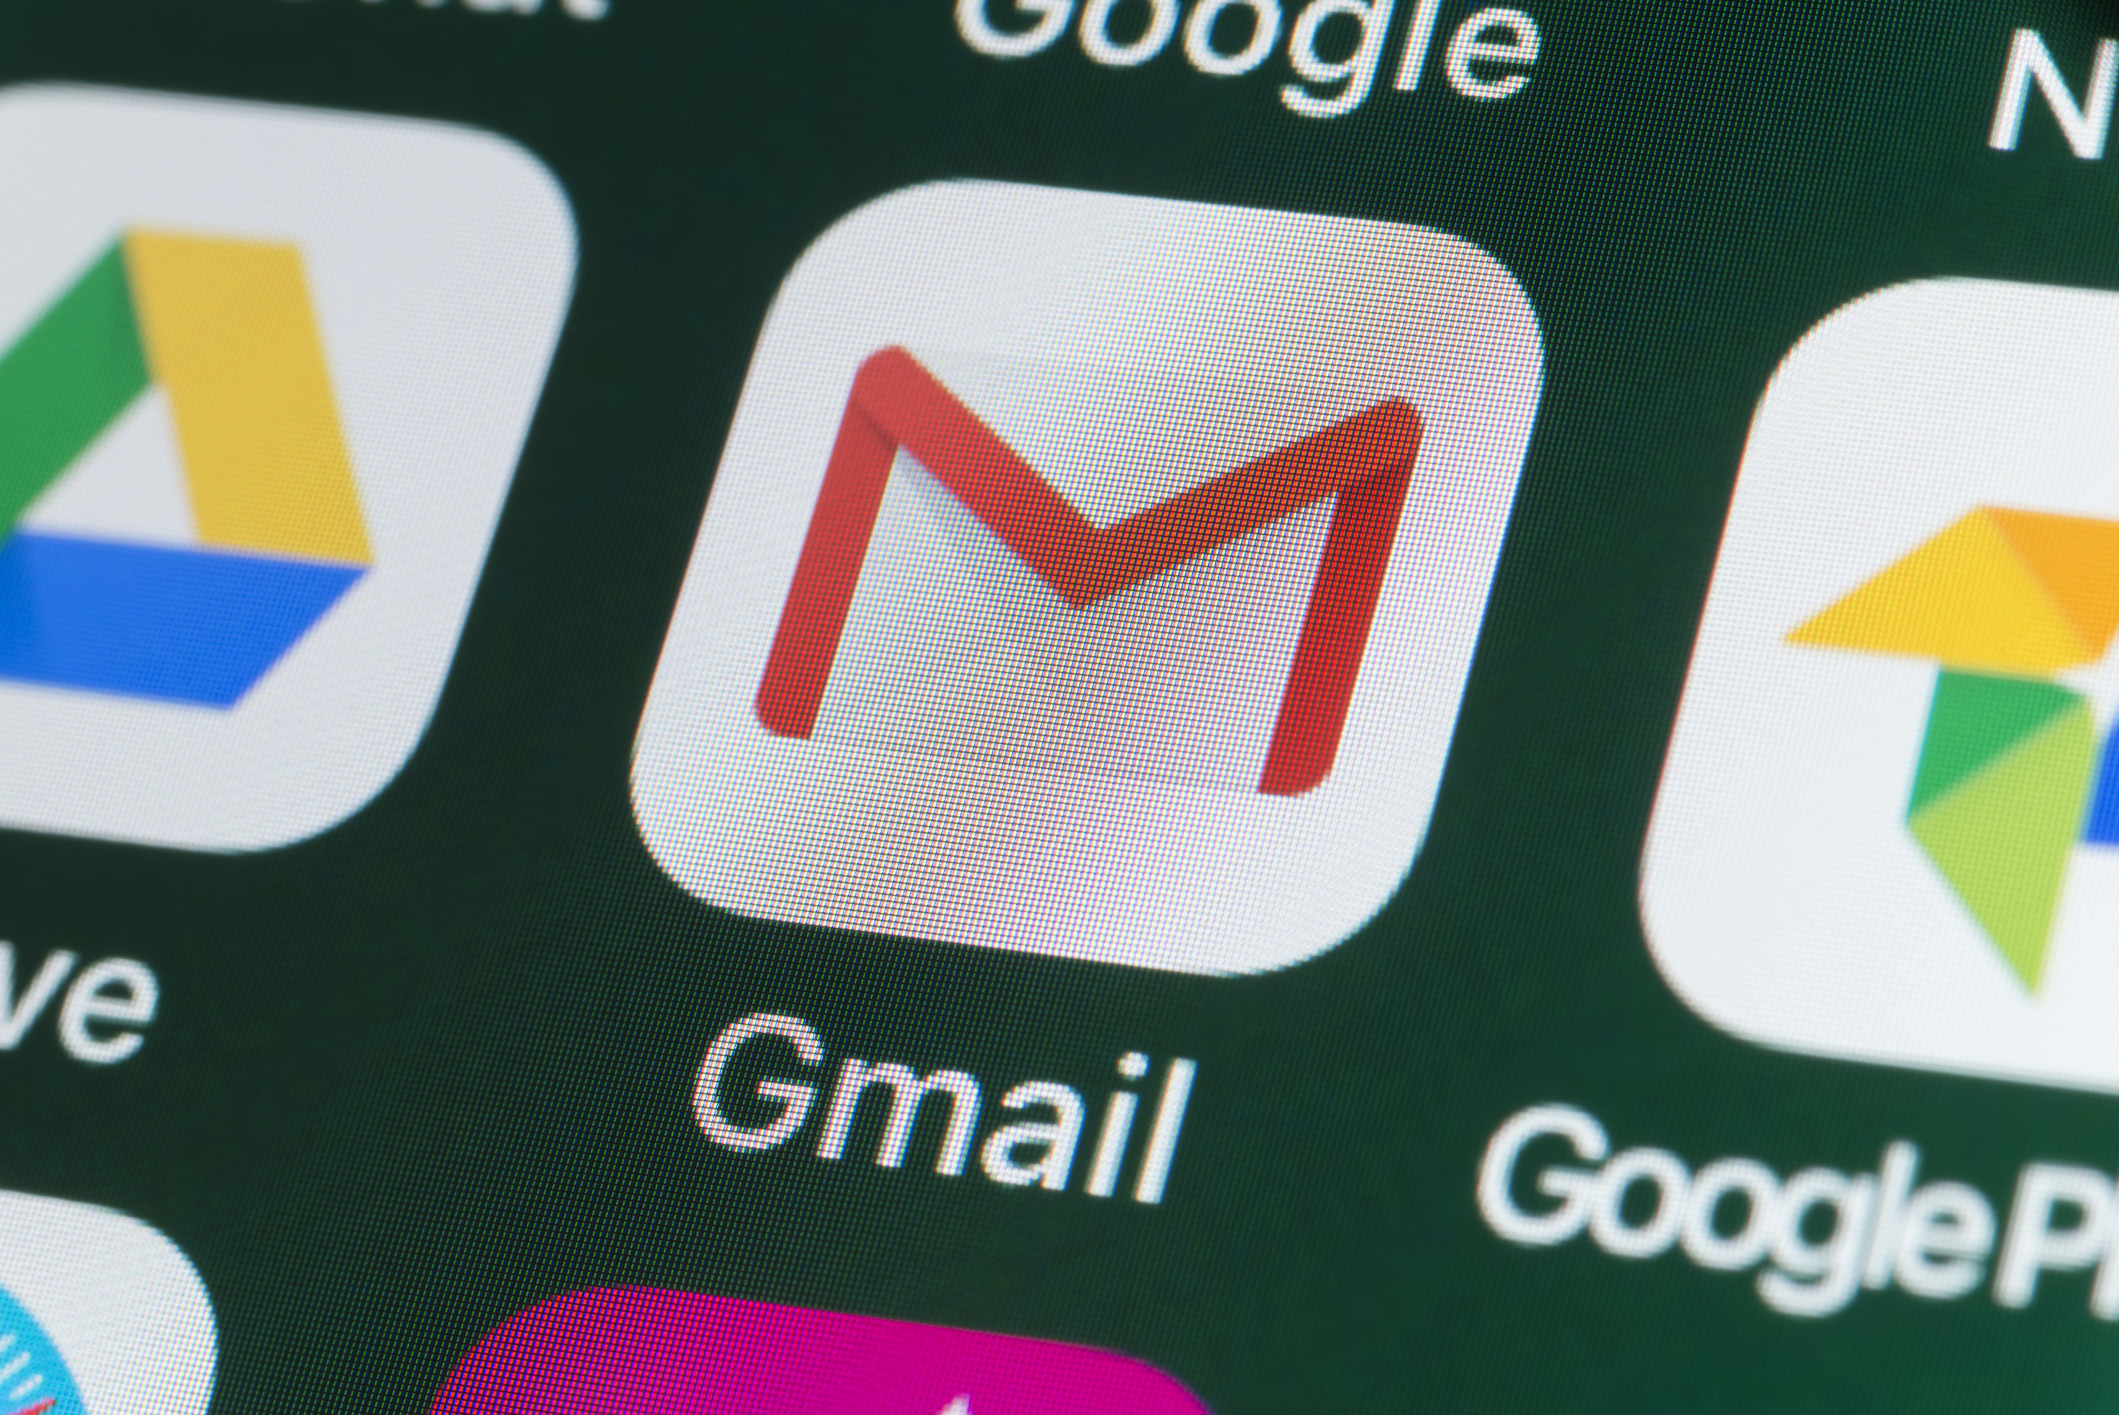 Google confirma data para deletar contas inativas do Gmail e YouTube 3